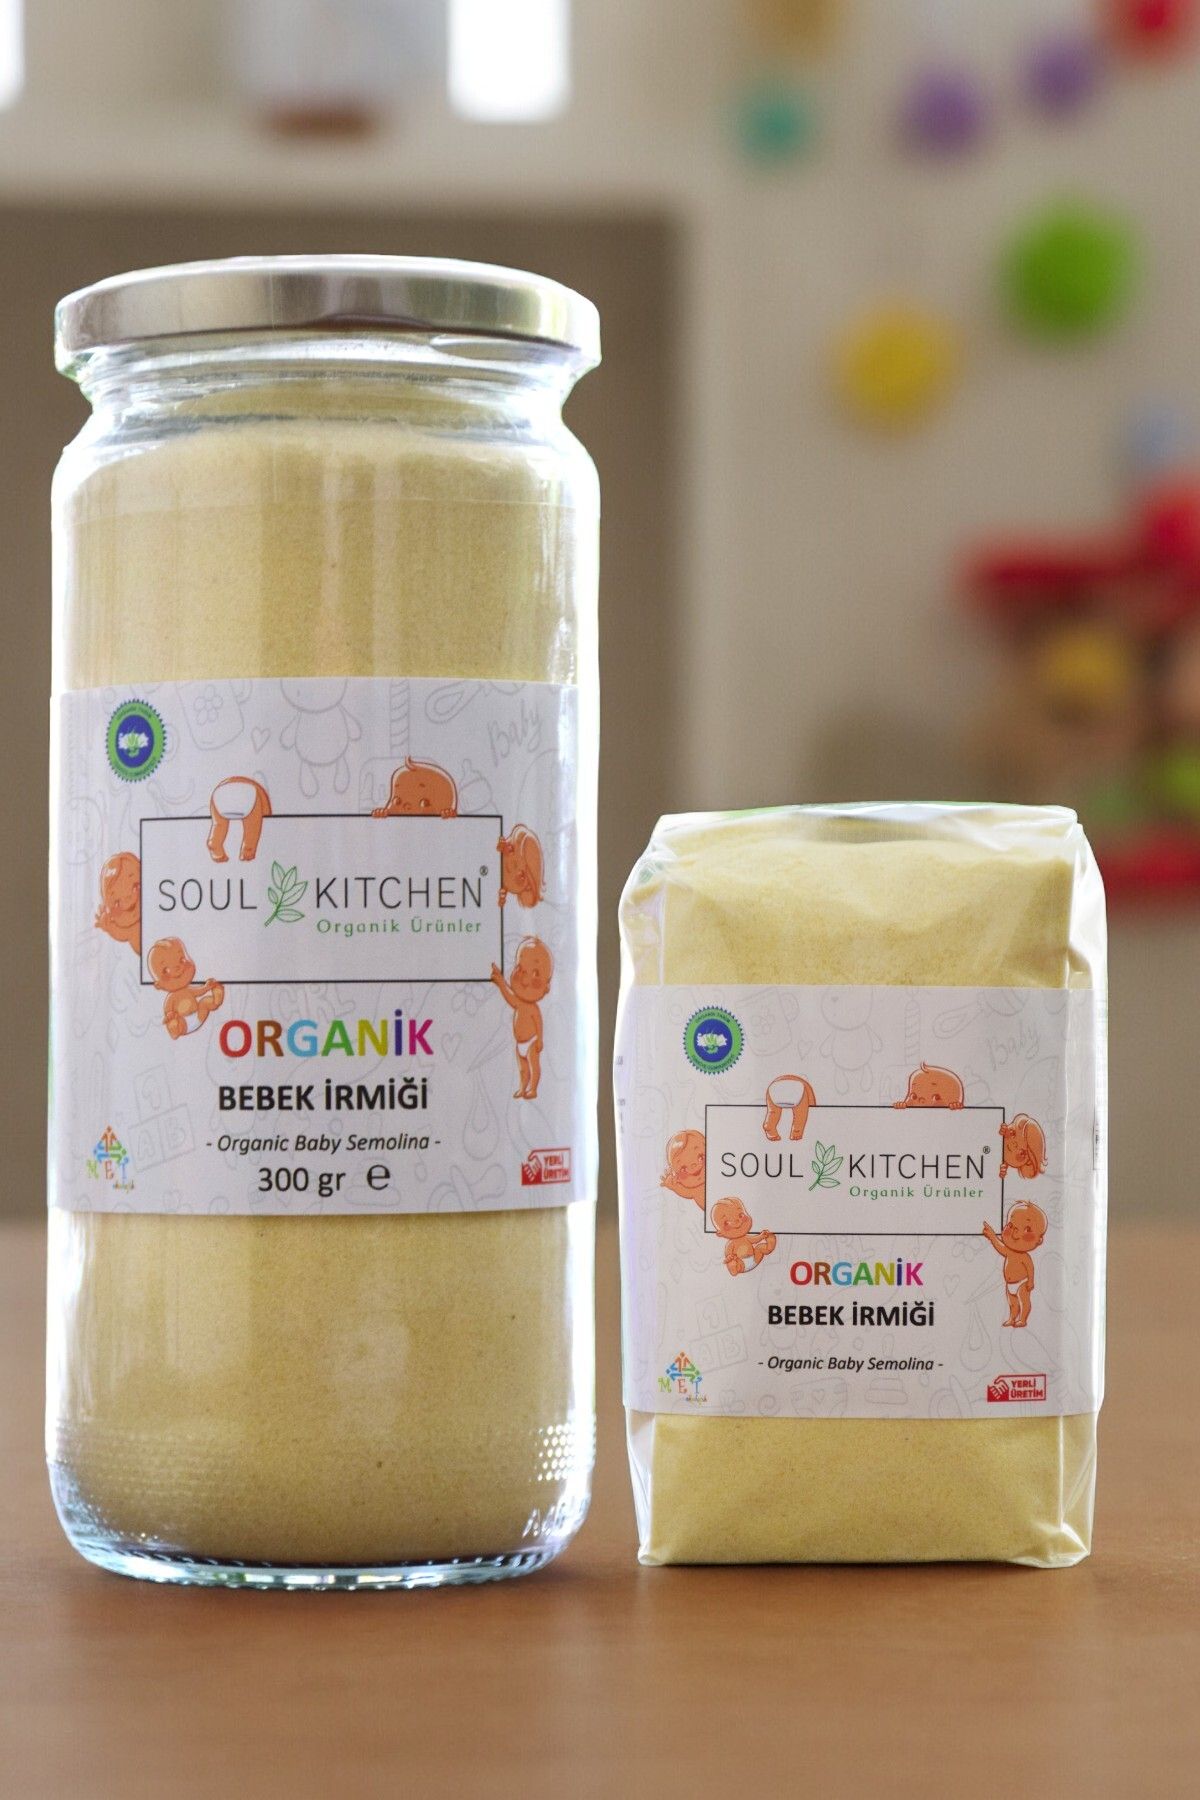 Soul Kitchen Organik Ürünler Organik Bebek Irmiği 300gr + Organik Bebek Irmiği 250gr